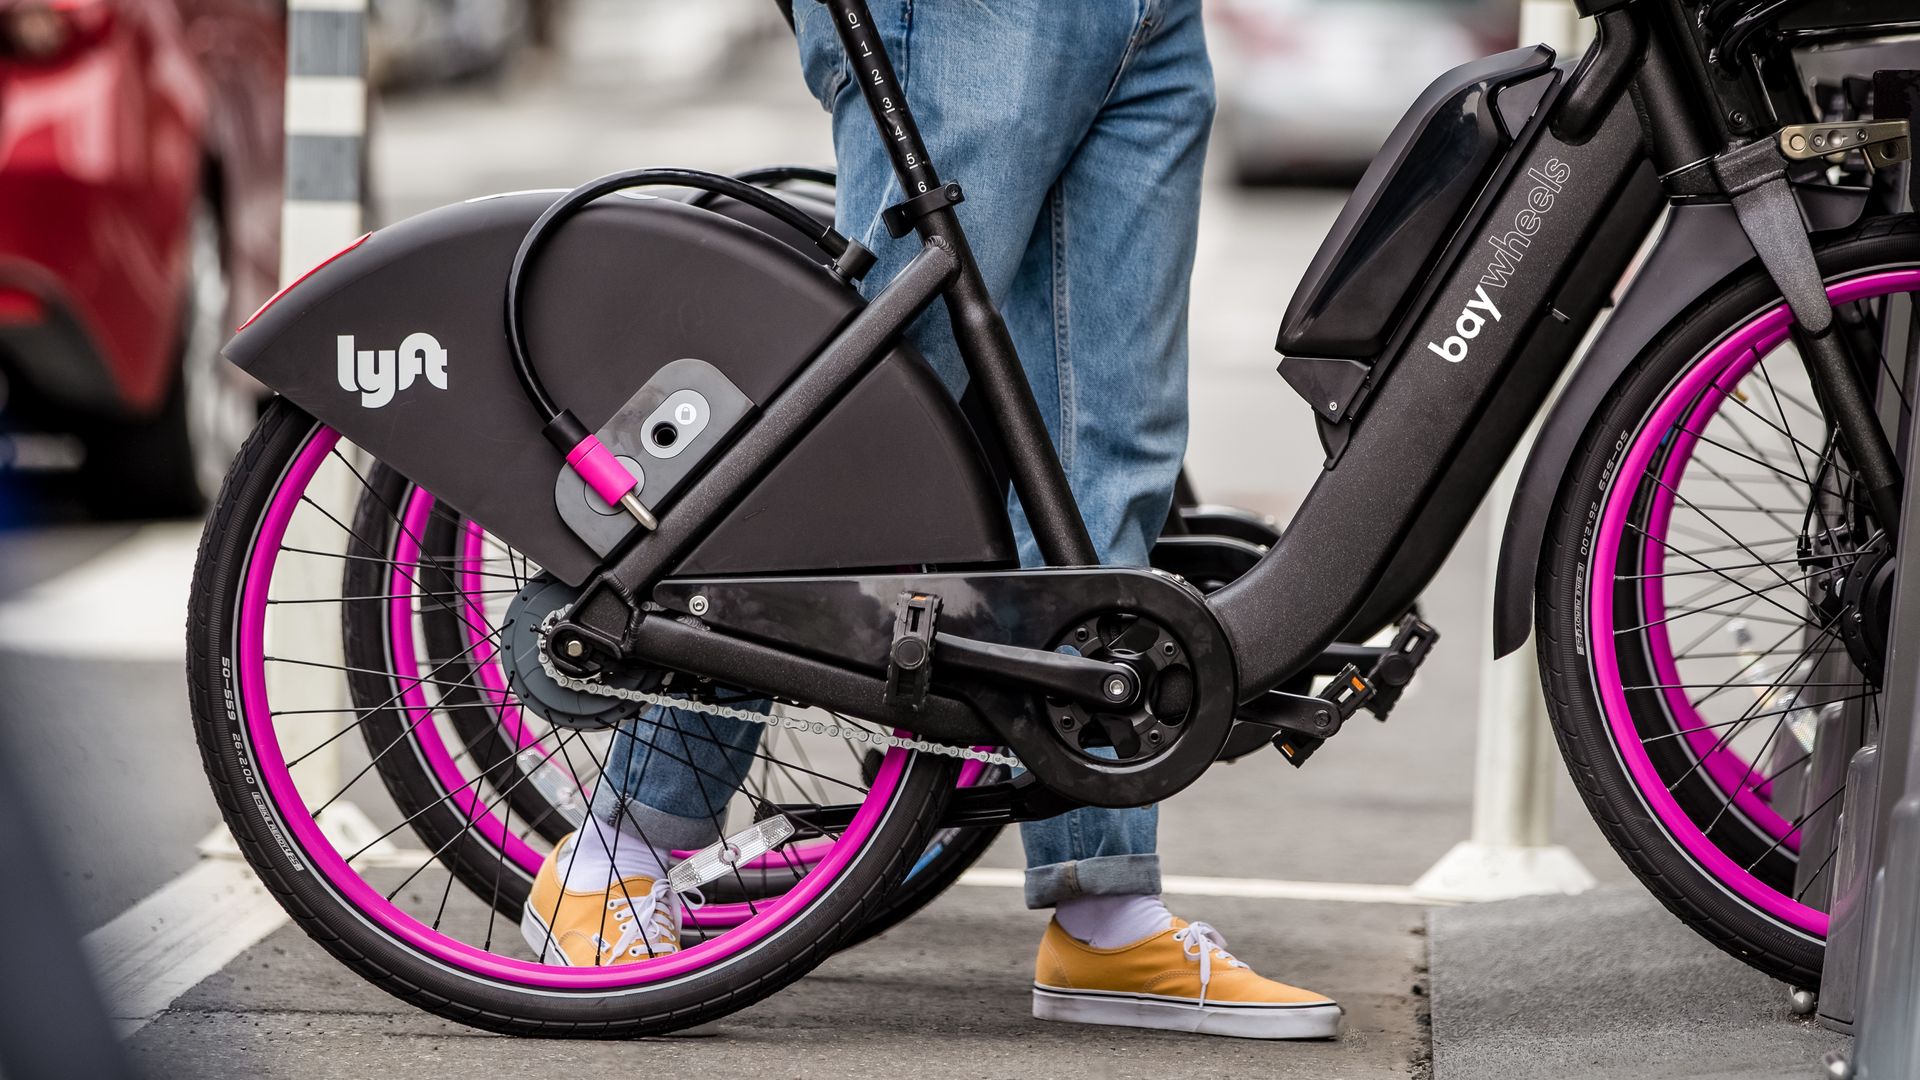 Photo of Lyft's new bike-share bikes with Lyft and Bay Wheels branding. 